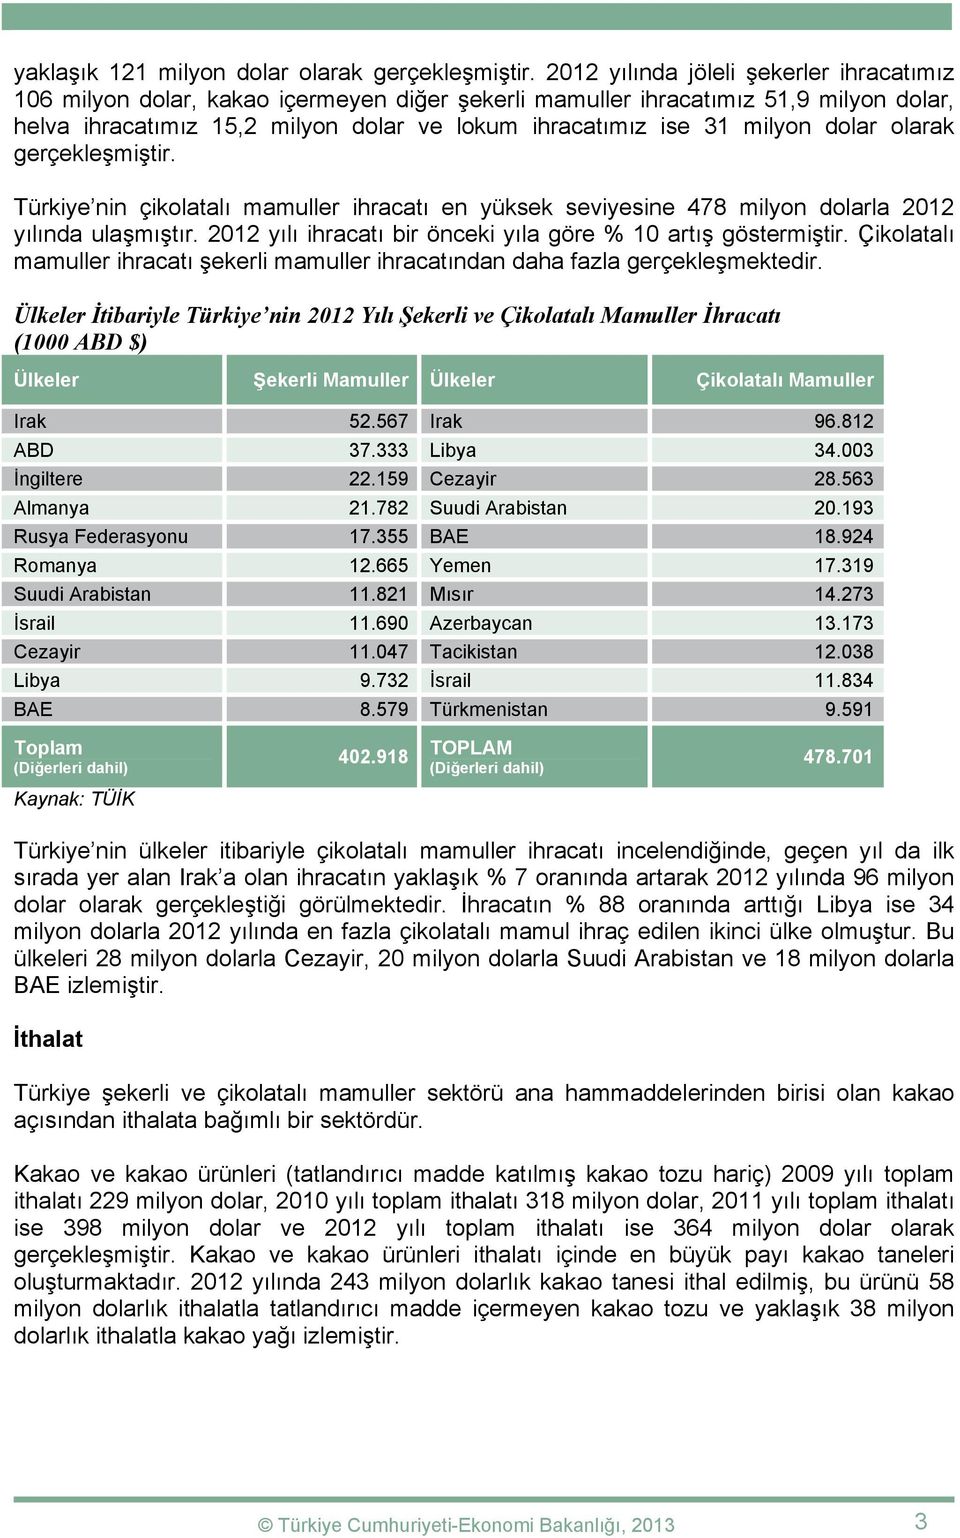 dolar olarak gerçekleşmiştir. Türkiye nin çikolatalı mamuller ihracatı en yüksek seviyesine 478 milyon dolarla 2012 yılında ulaşmıştır. 2012 yılı ihracatı bir önceki yıla göre % 10 artış göstermiştir.